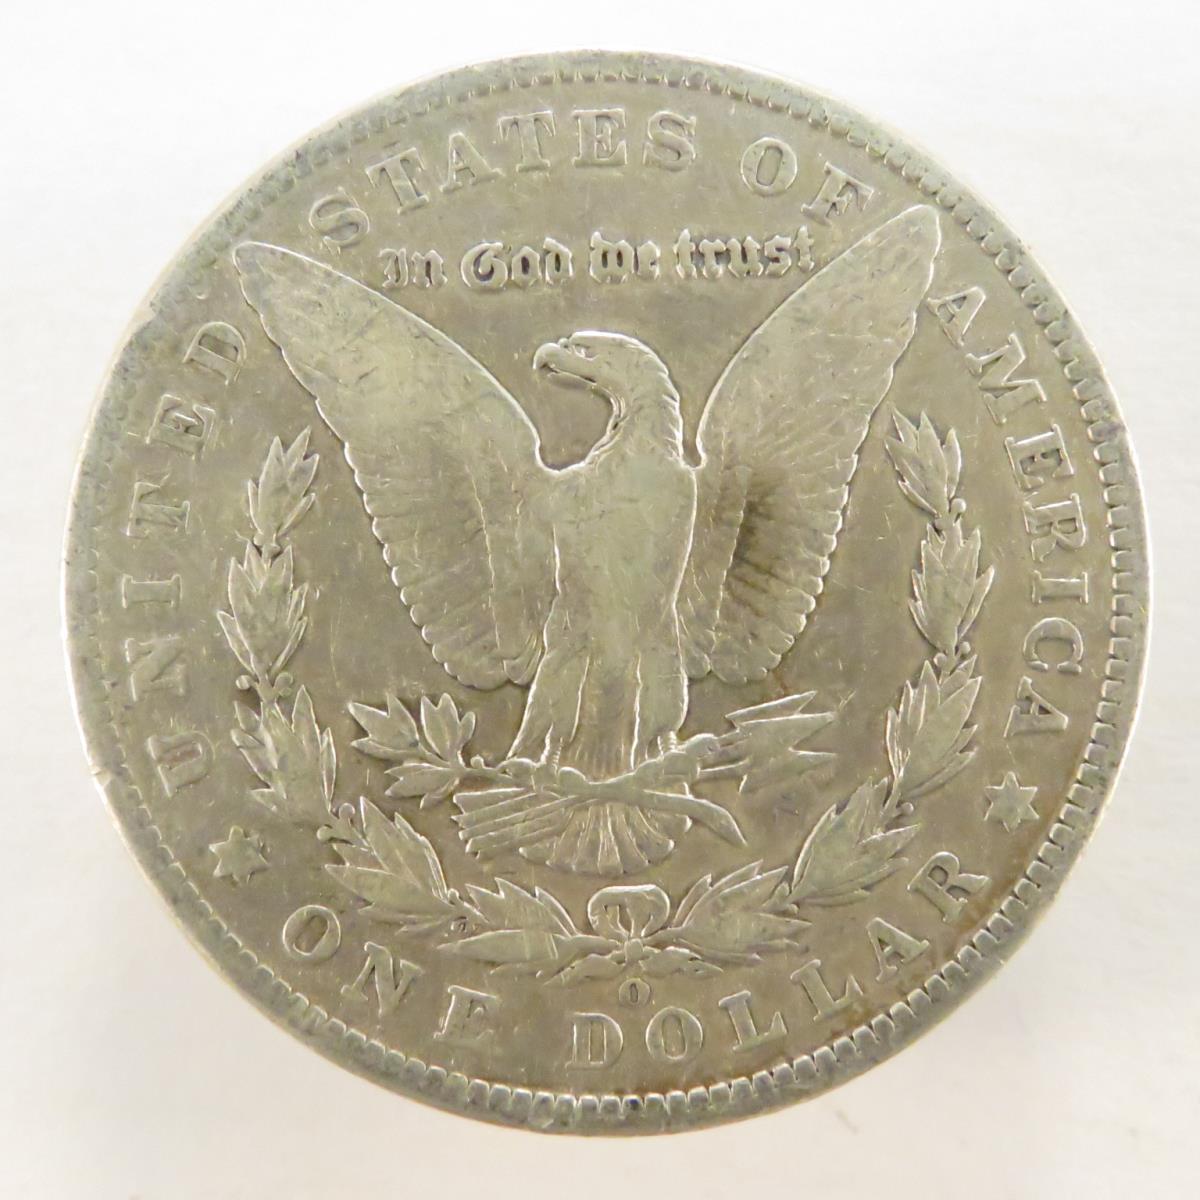 1902 O Morgan Silver Dollar